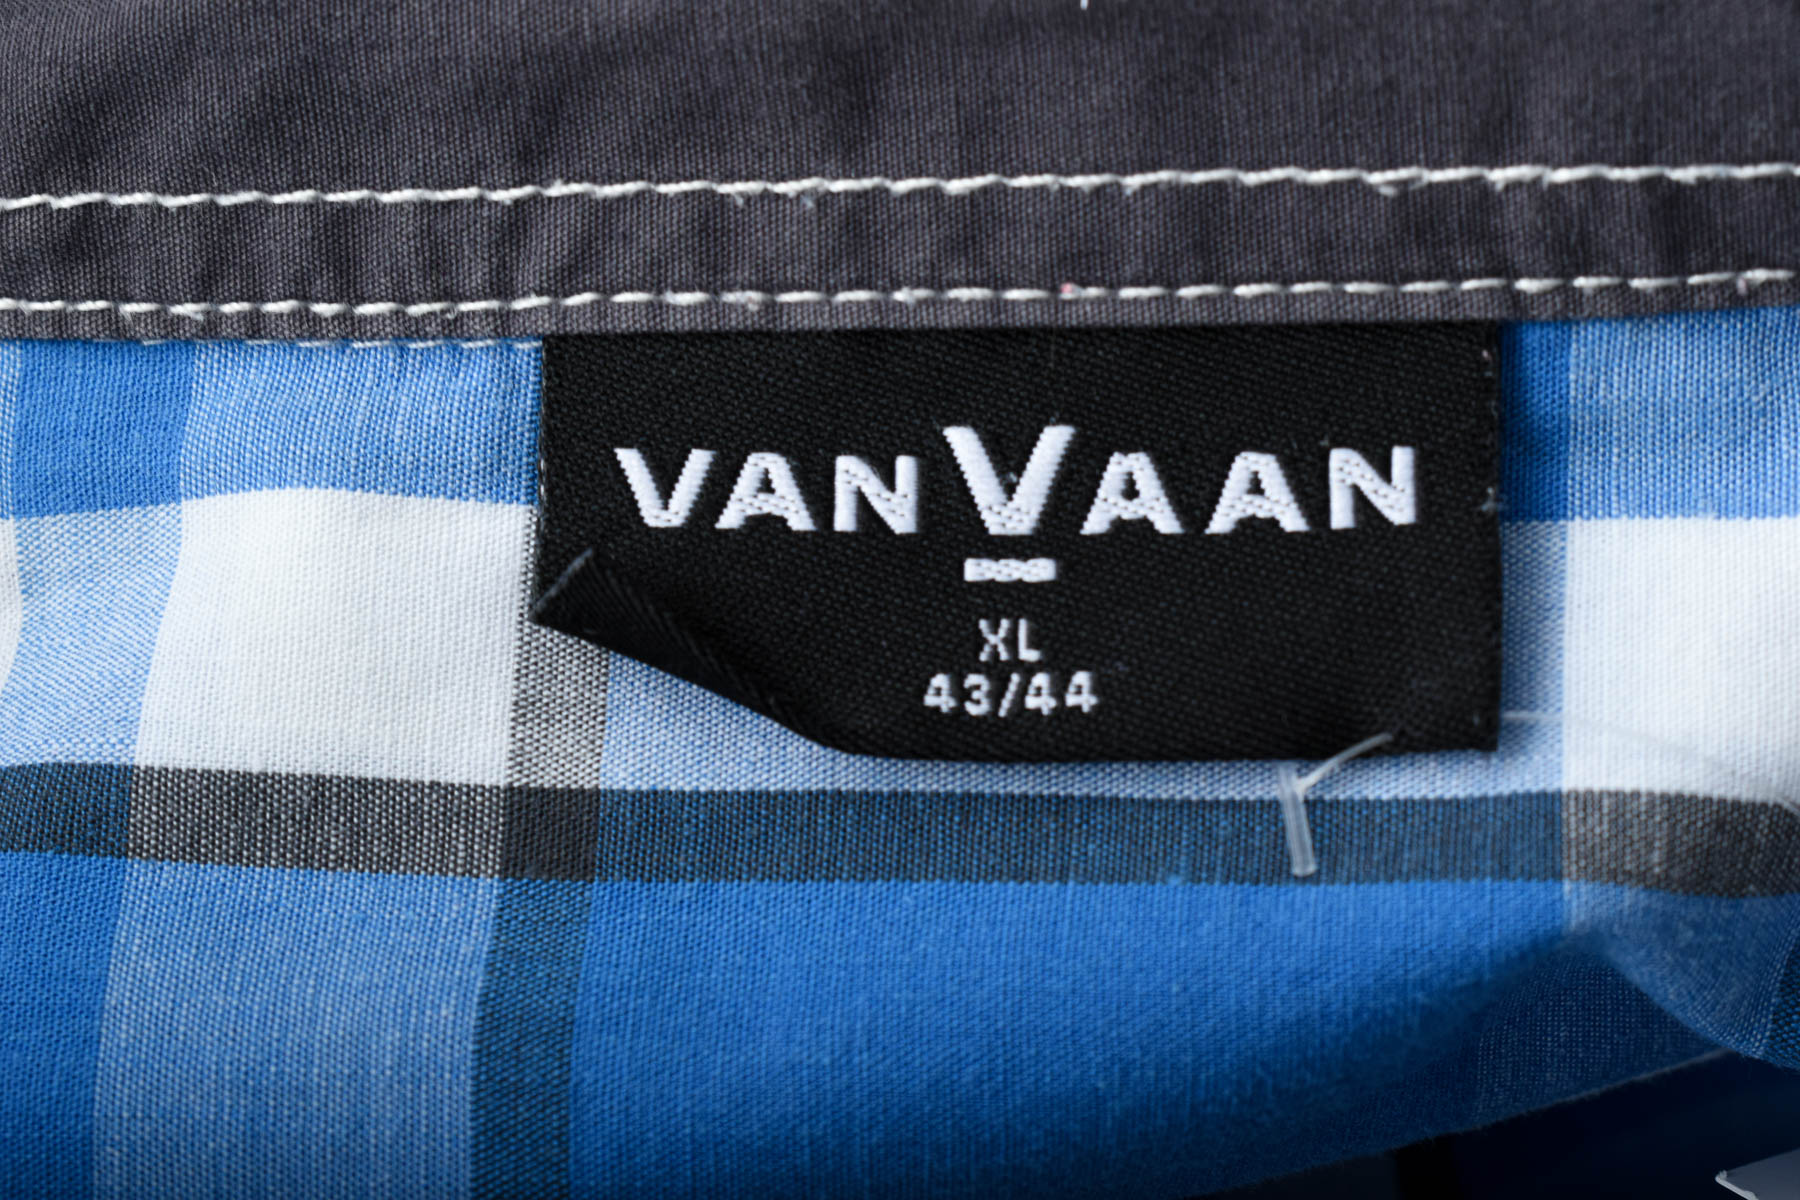 Men's shirt - Van Vaan - 2